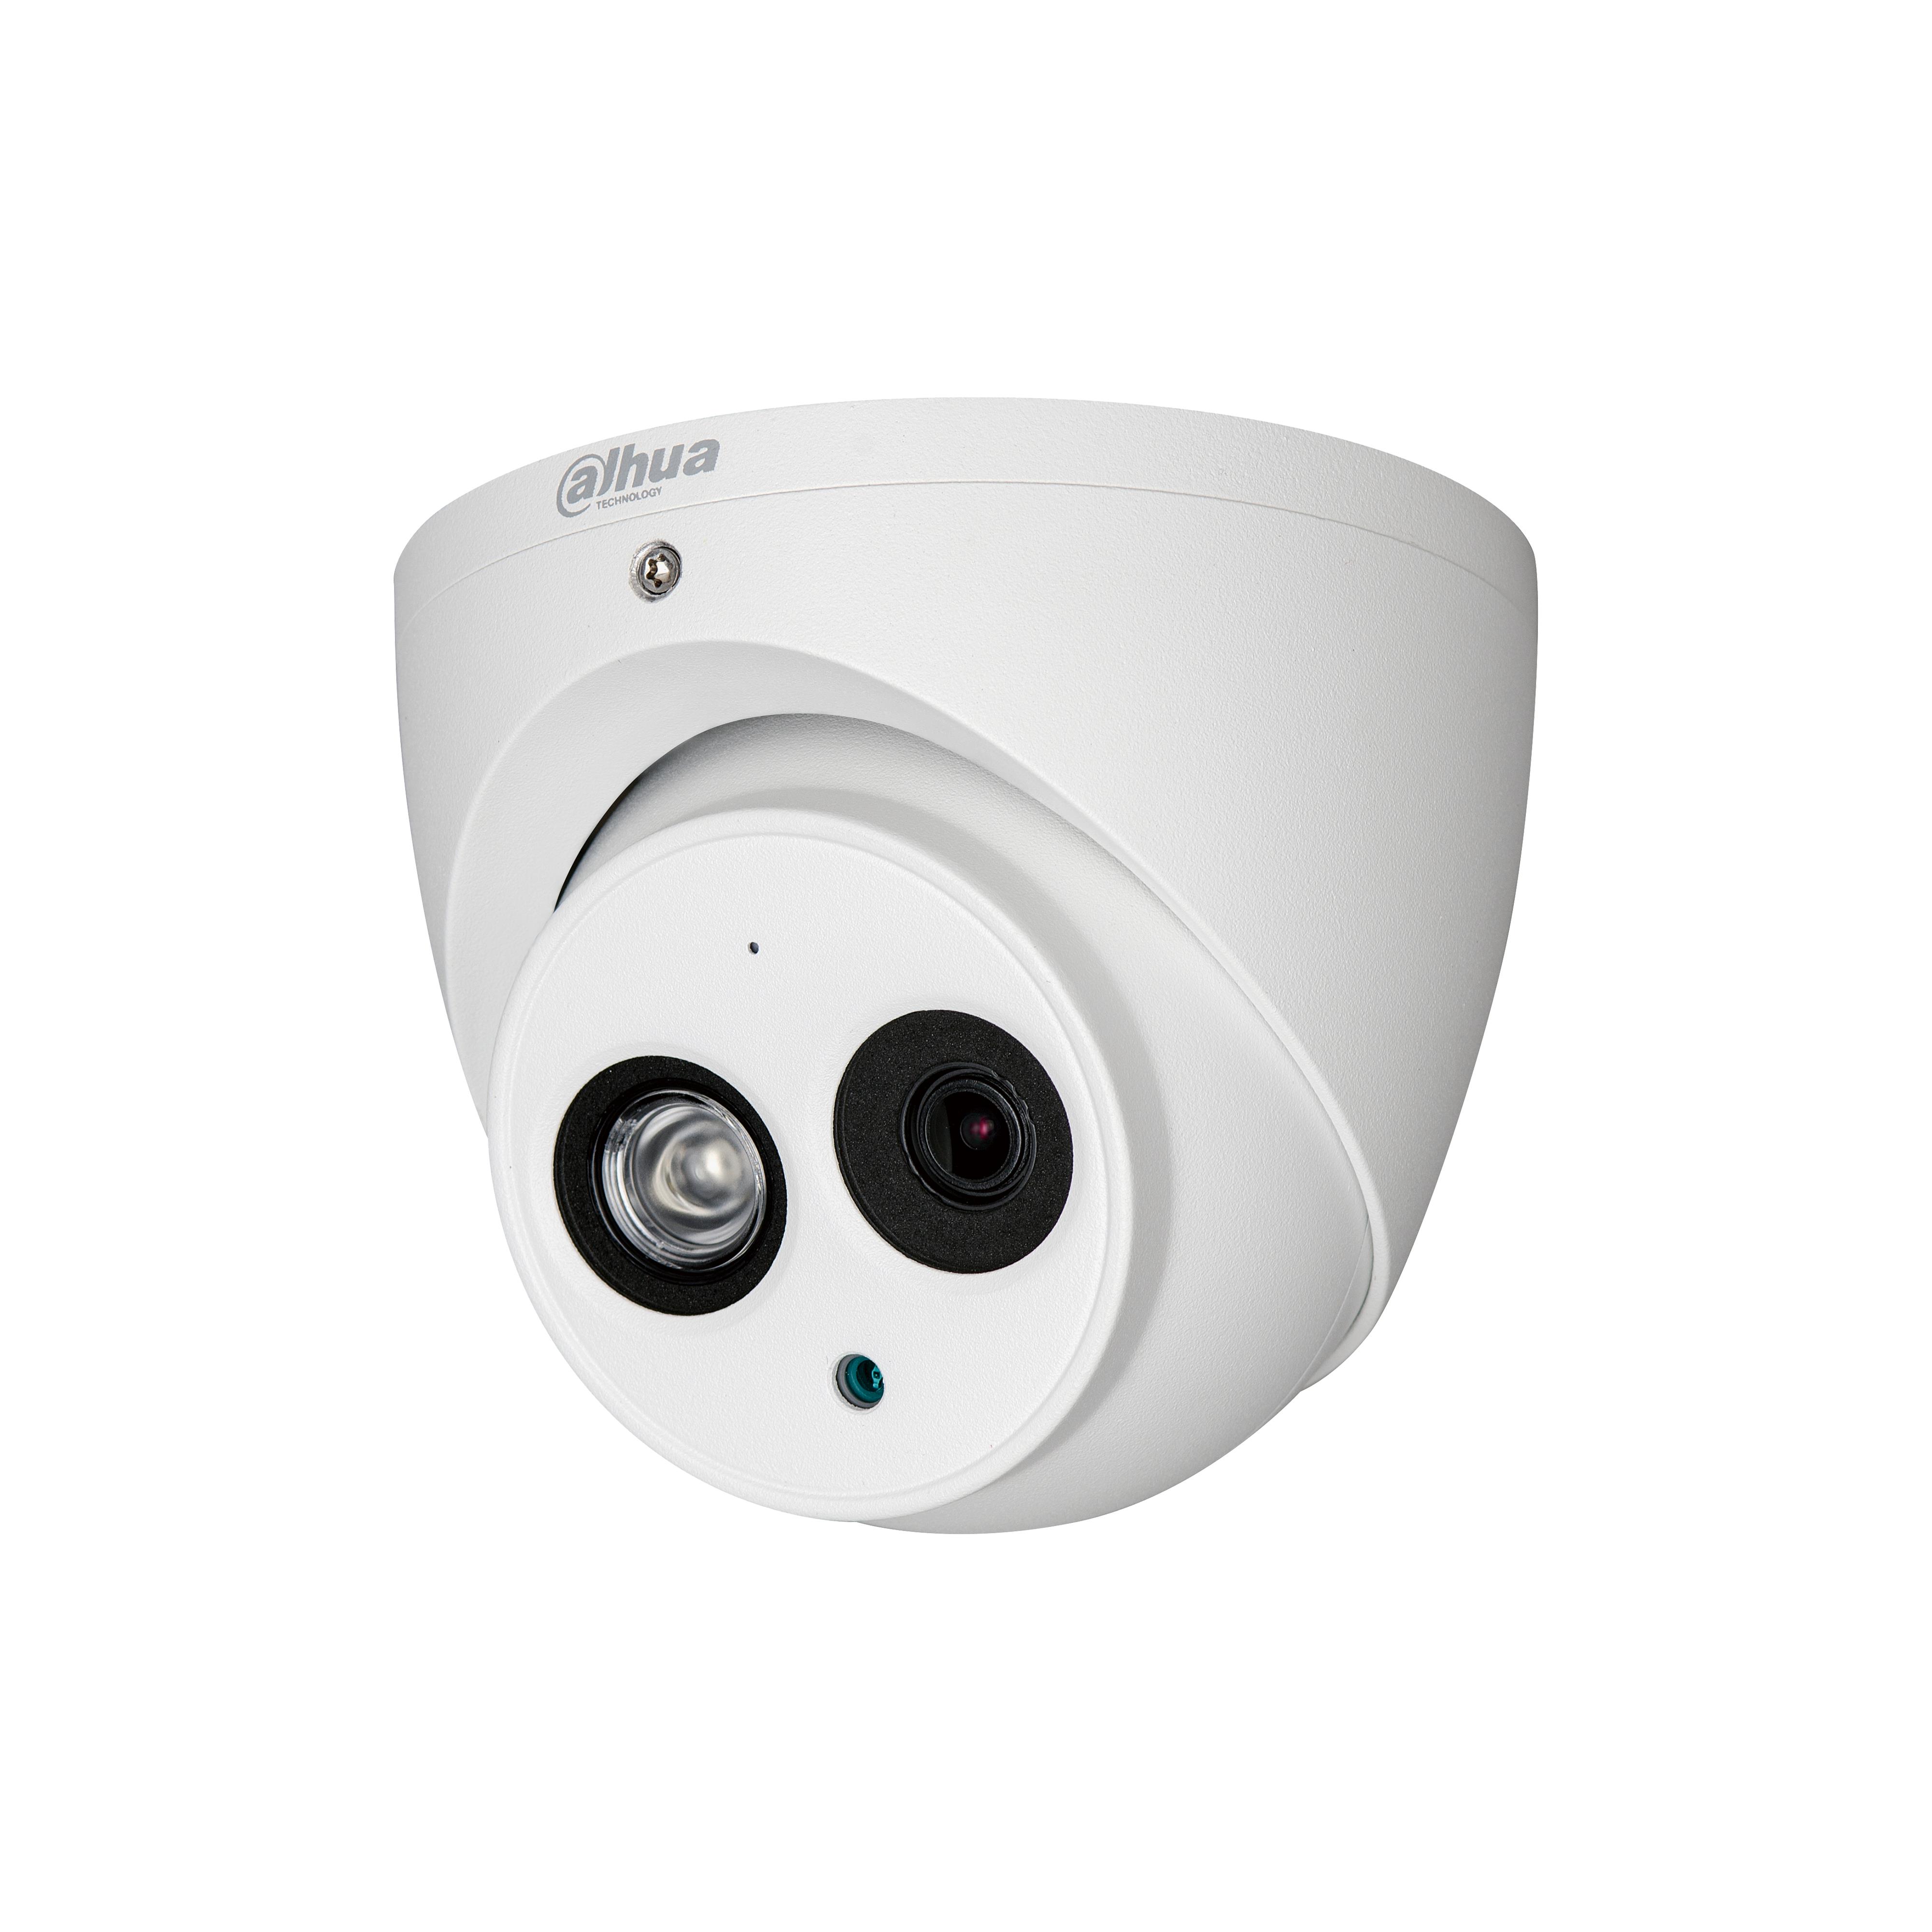 Dahua - DAHUA Security Camera CCTV Europe Lite hac-hdw1230em-a-0280b